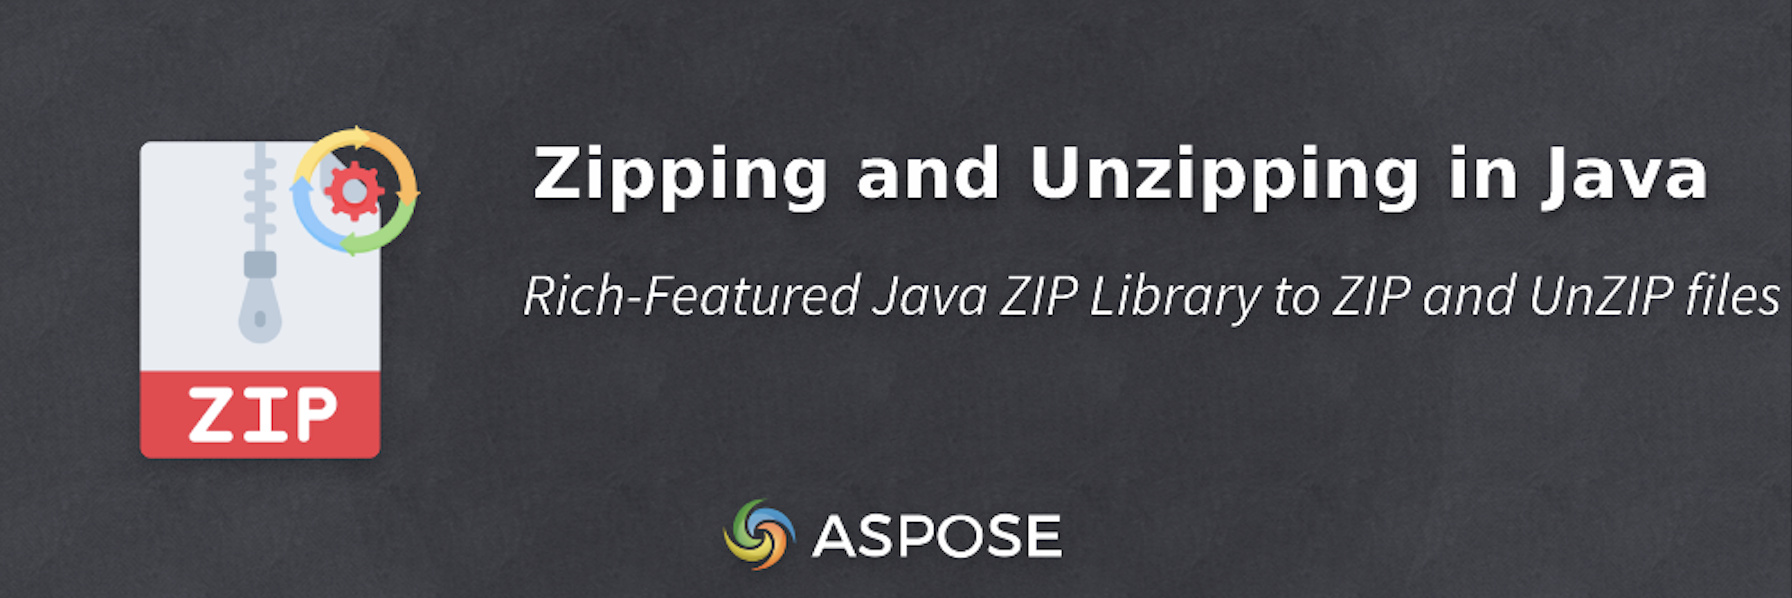 การซิปและการขยายไฟล์ใน Java - Java ZIP Library